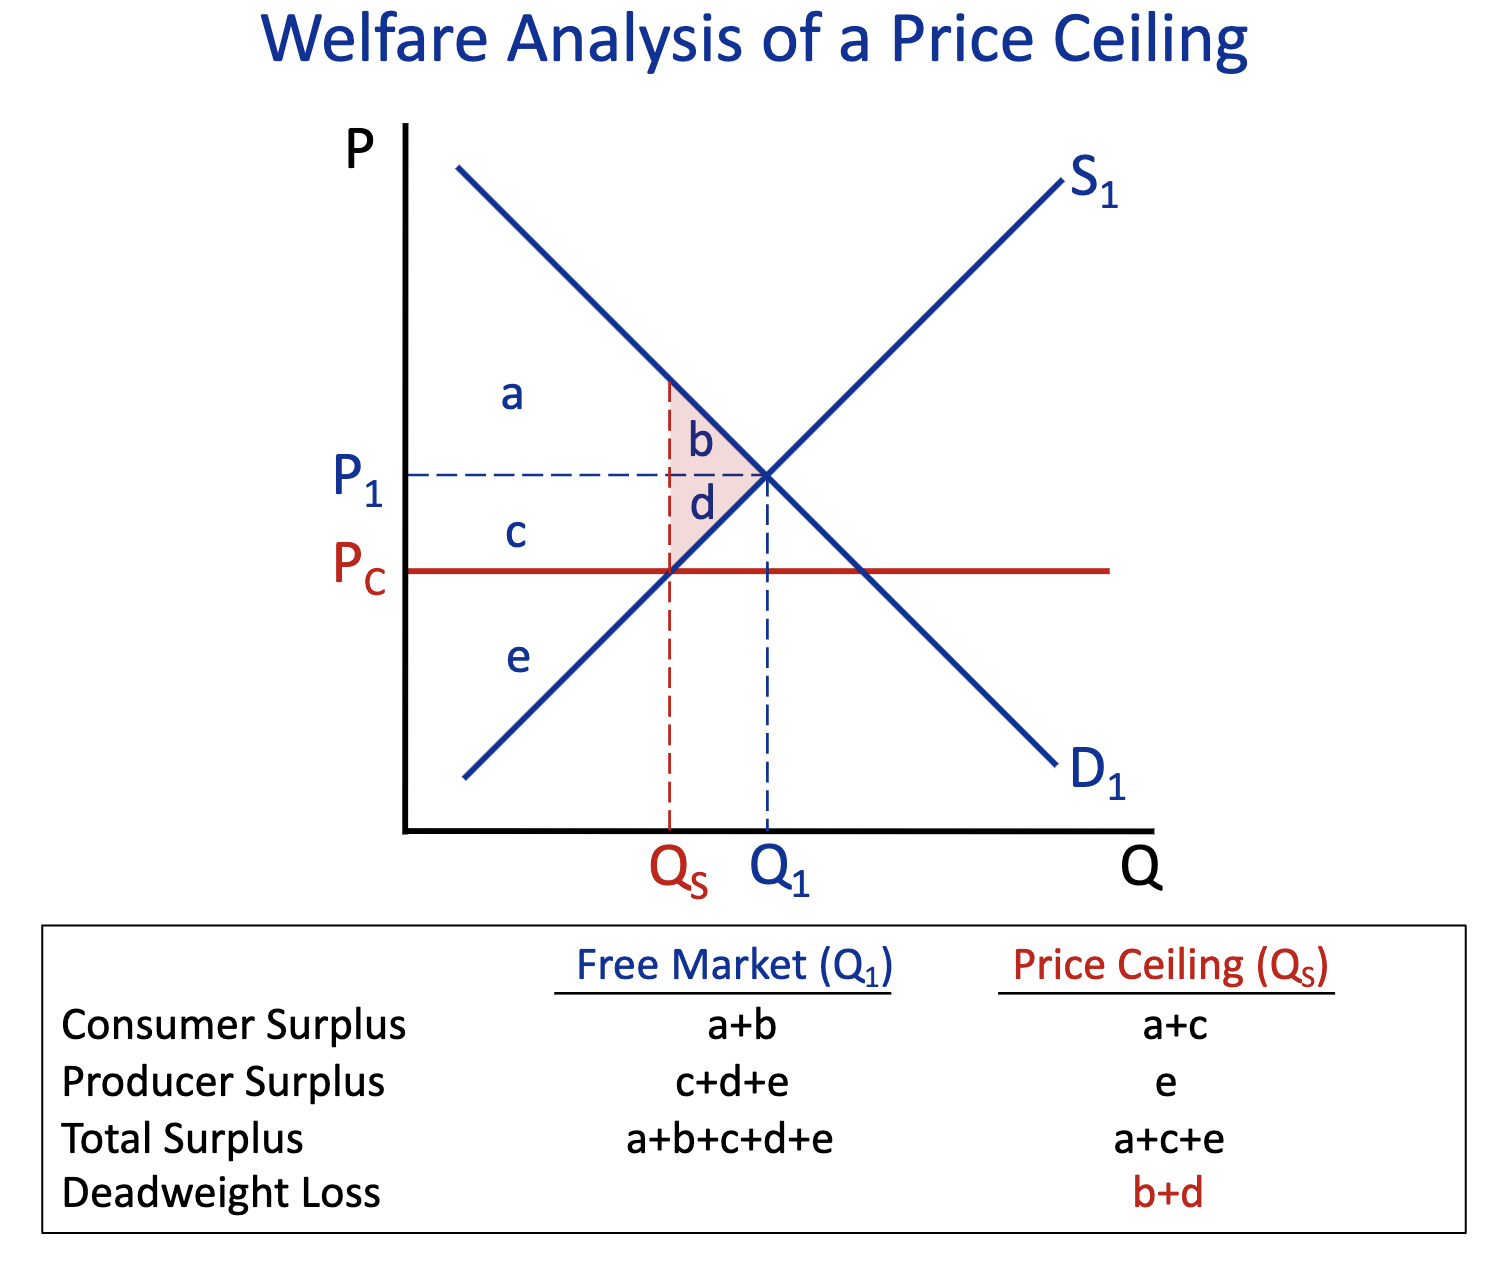 <p>Free Market (Q1) : a+b+d+c+e</p><p>Price Ceiling (Q2) : a+c+e</p>